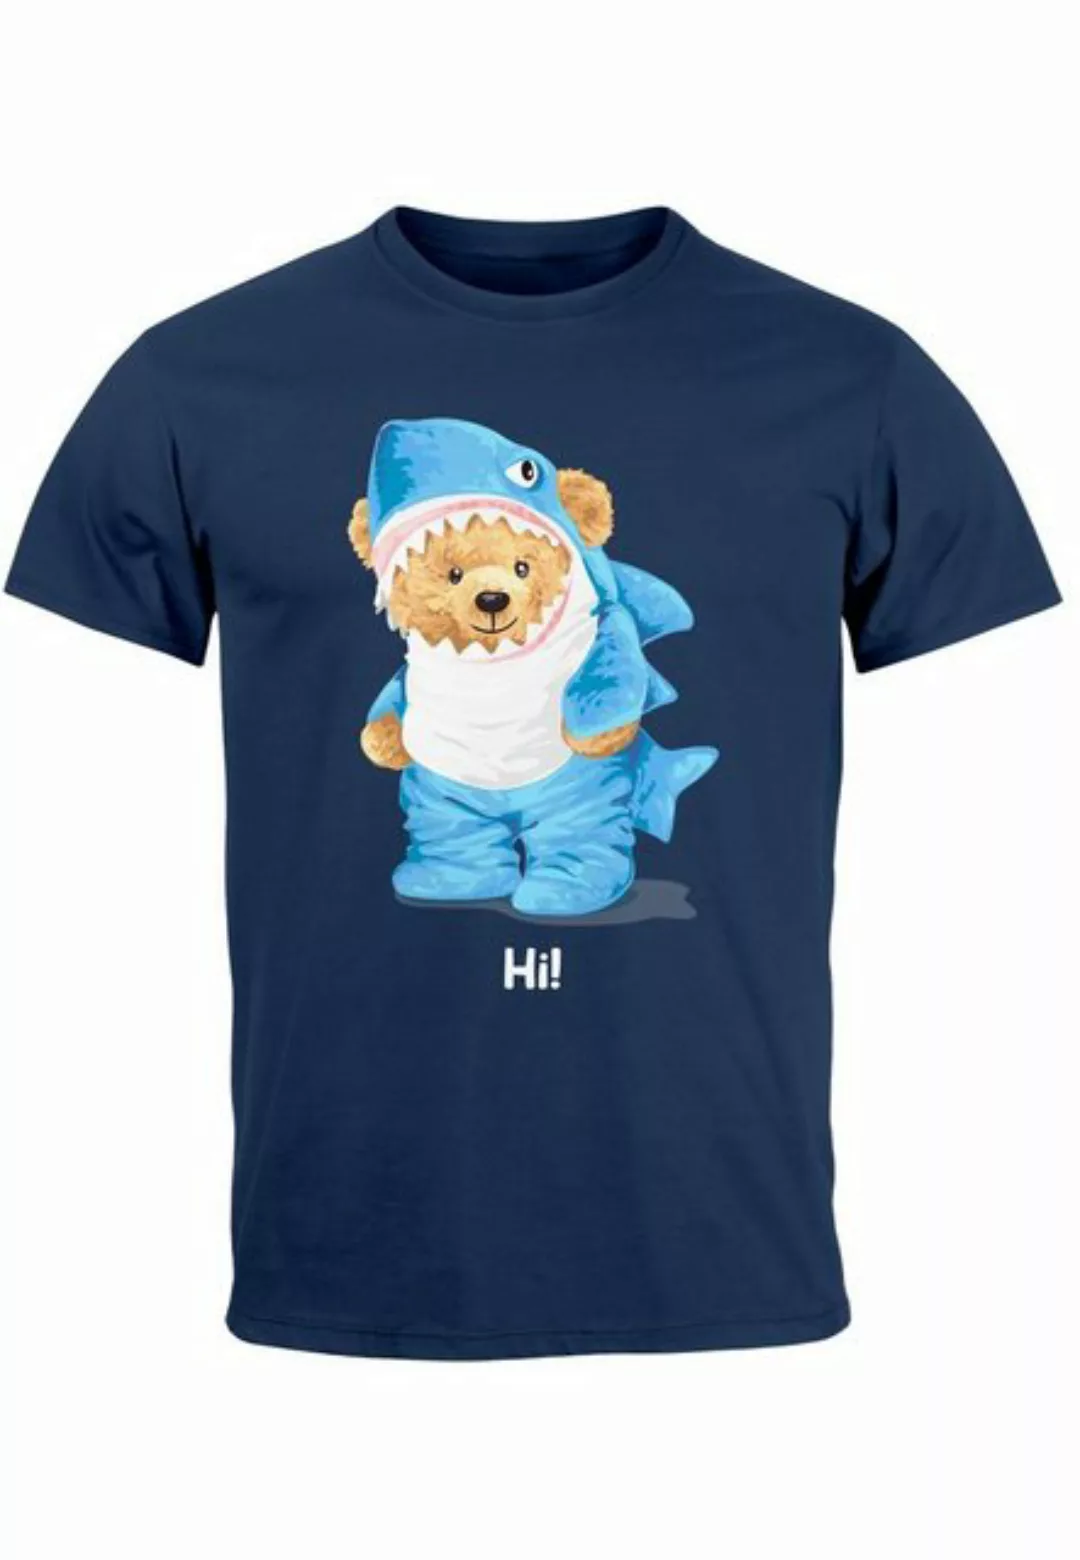 Neverless Print-Shirt Herren T-Shirt Hai Hi Teddy Bär Witz Parodie Printshi günstig online kaufen